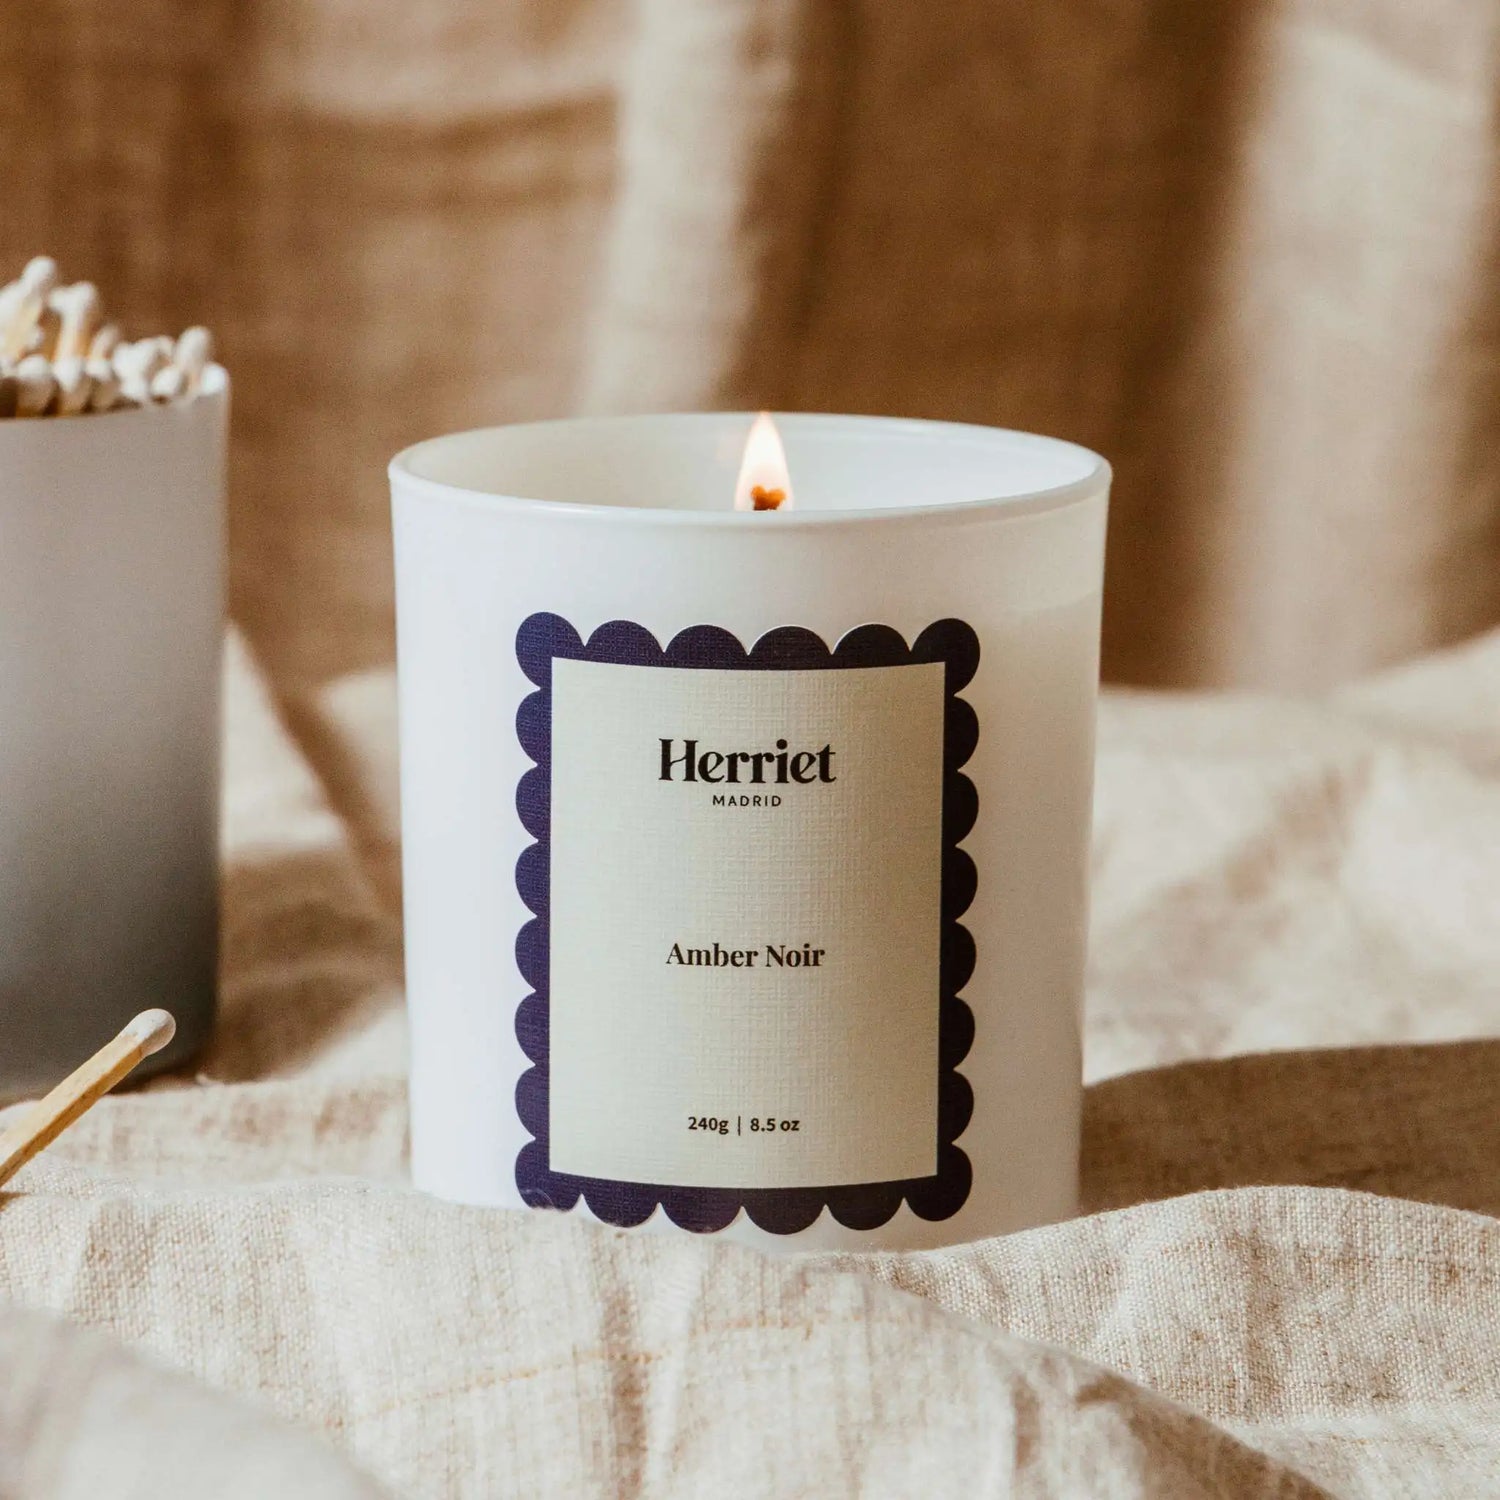 Vela Amber Noir de la colección Postcards de Herriet. Las mejores velas aromáticas